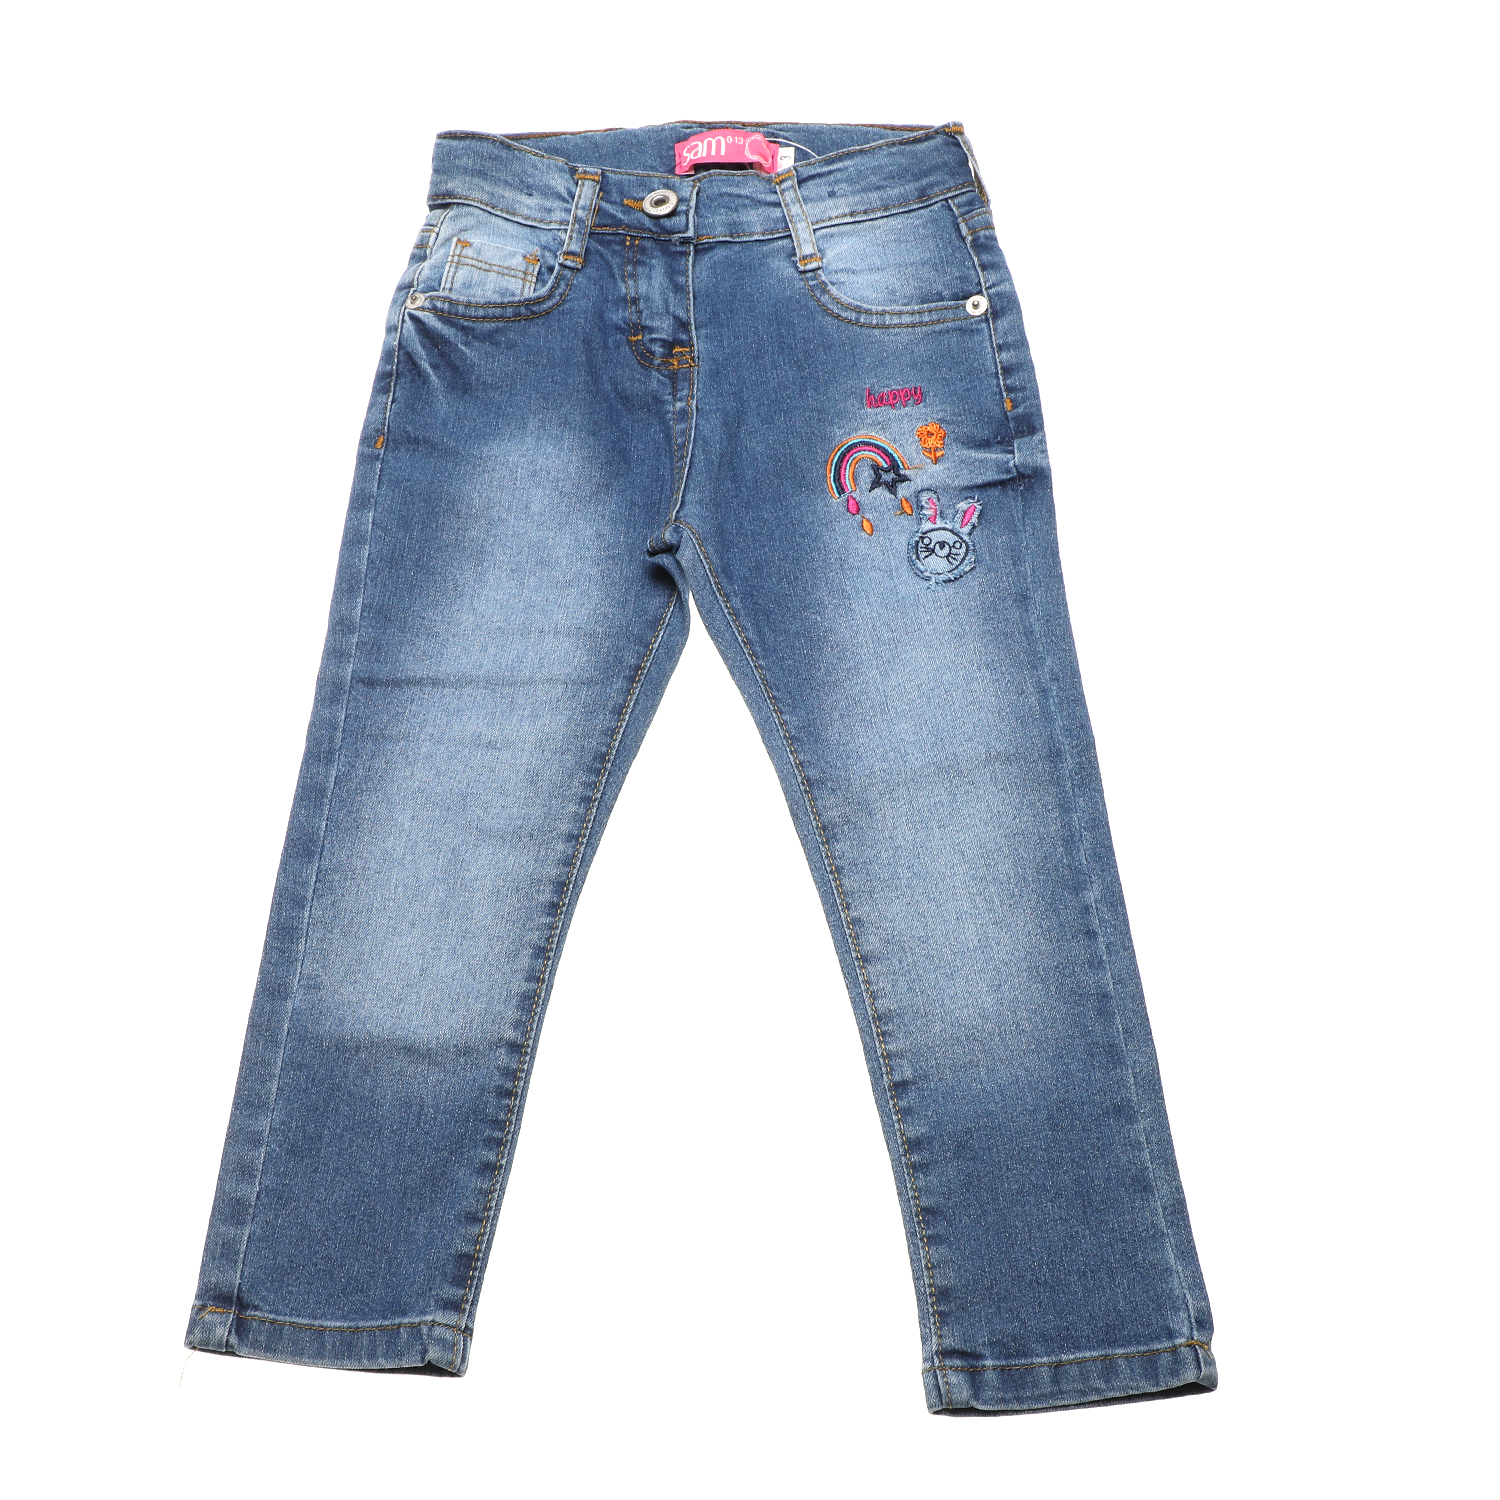 Παιδικά/Girls/Ρούχα/Παντελόνια SAM 0-13 - Παιδικό jean παντελόνι SAM 0-13 HAPPY μπλε